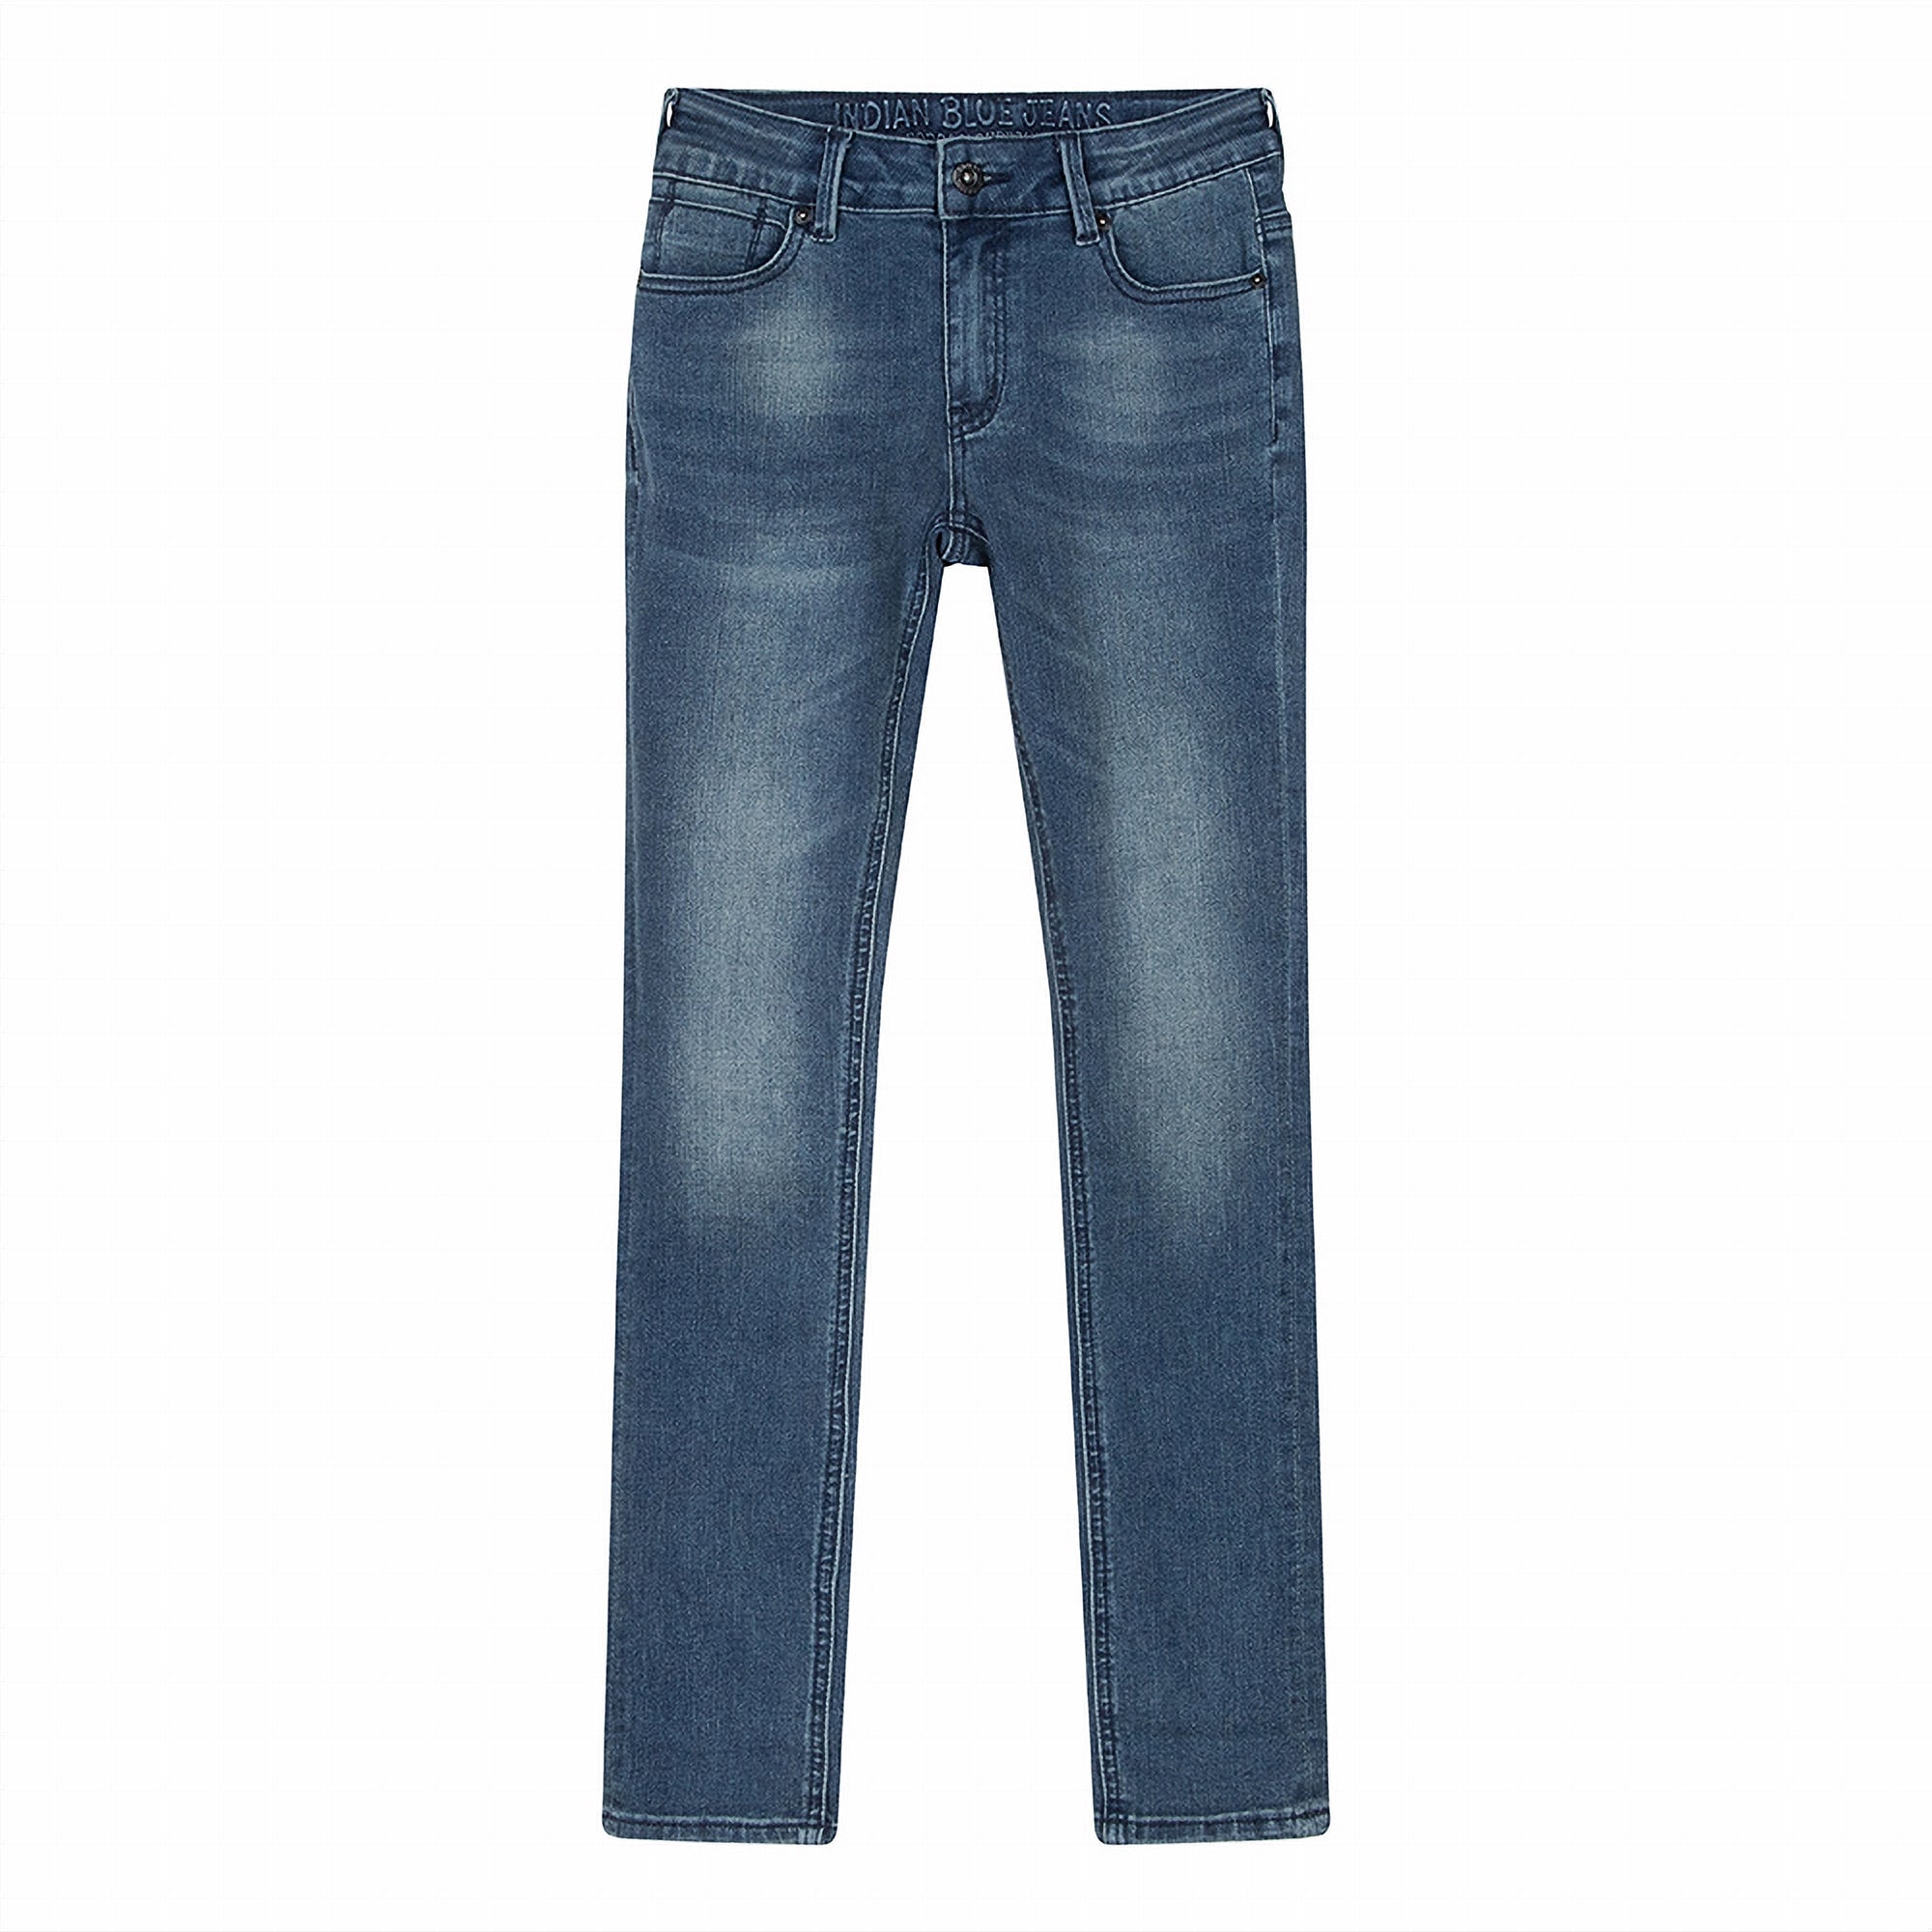 Jongens Jeans Blue Brad Super Skinny Fit van Indian Blue Jeans in de kleur Used Medium Denim in maat 134.